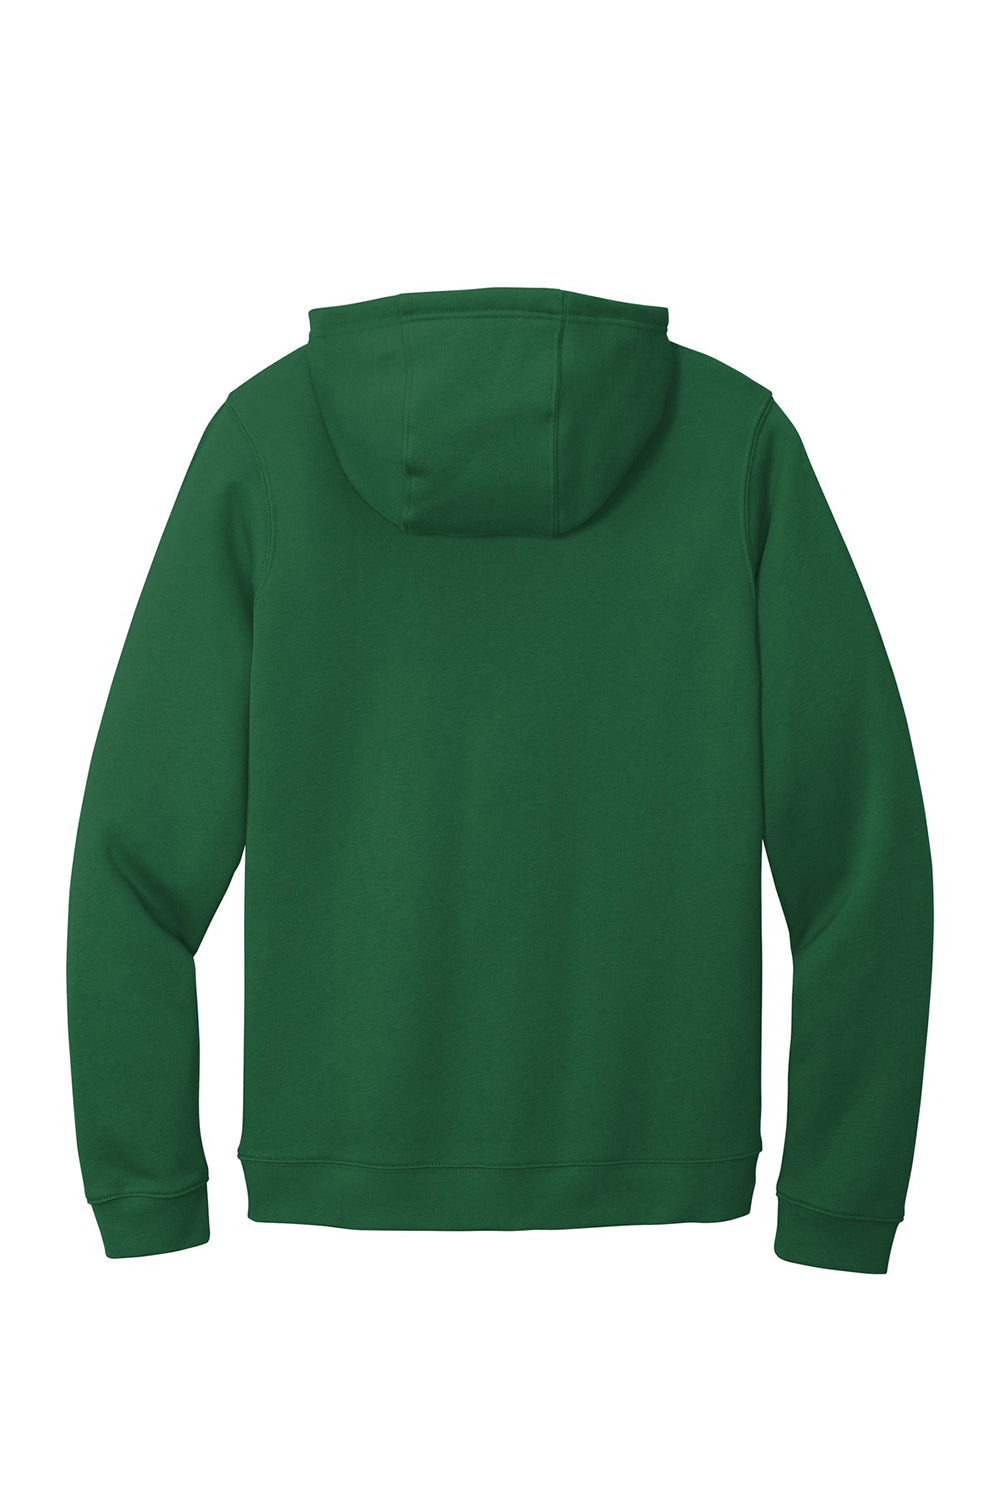 Nike CJ1611 Mens Club Fleece Hooded Sweatshirt Hoodie Dark Green Flat Back